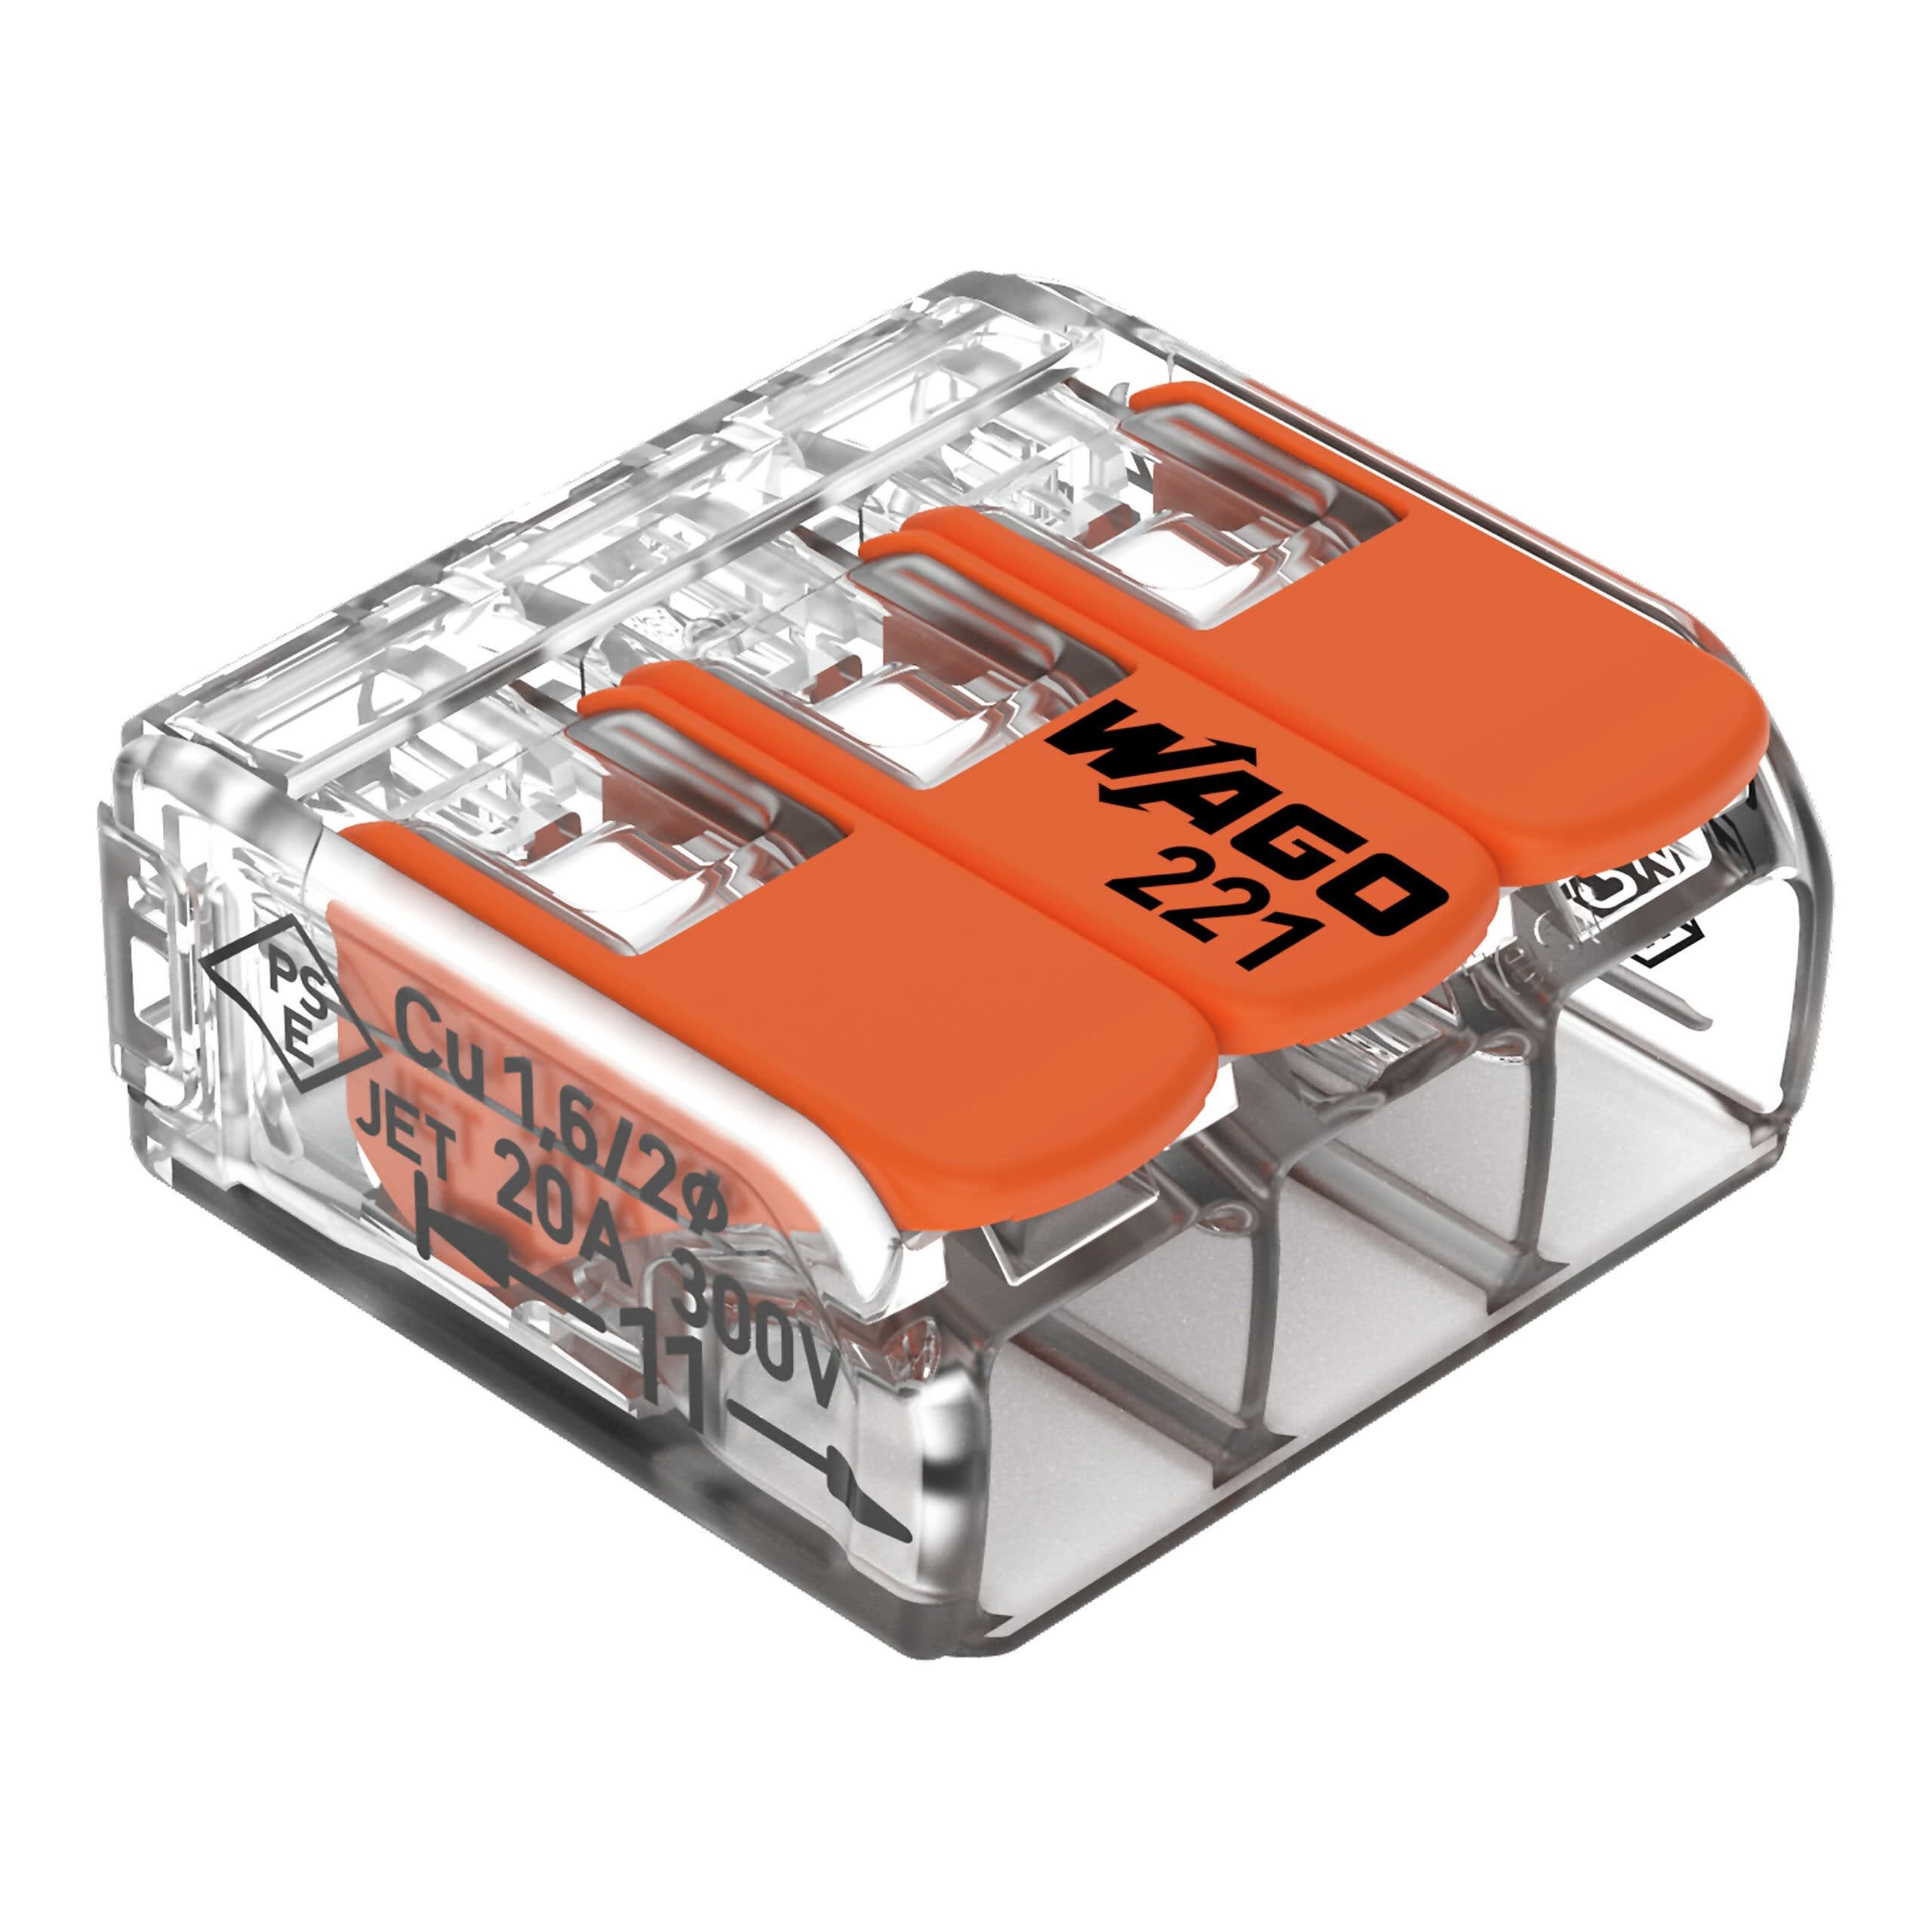 Borne WAGO 221 Mini 3x4mm² à leviers souple & rigide Wago Contact